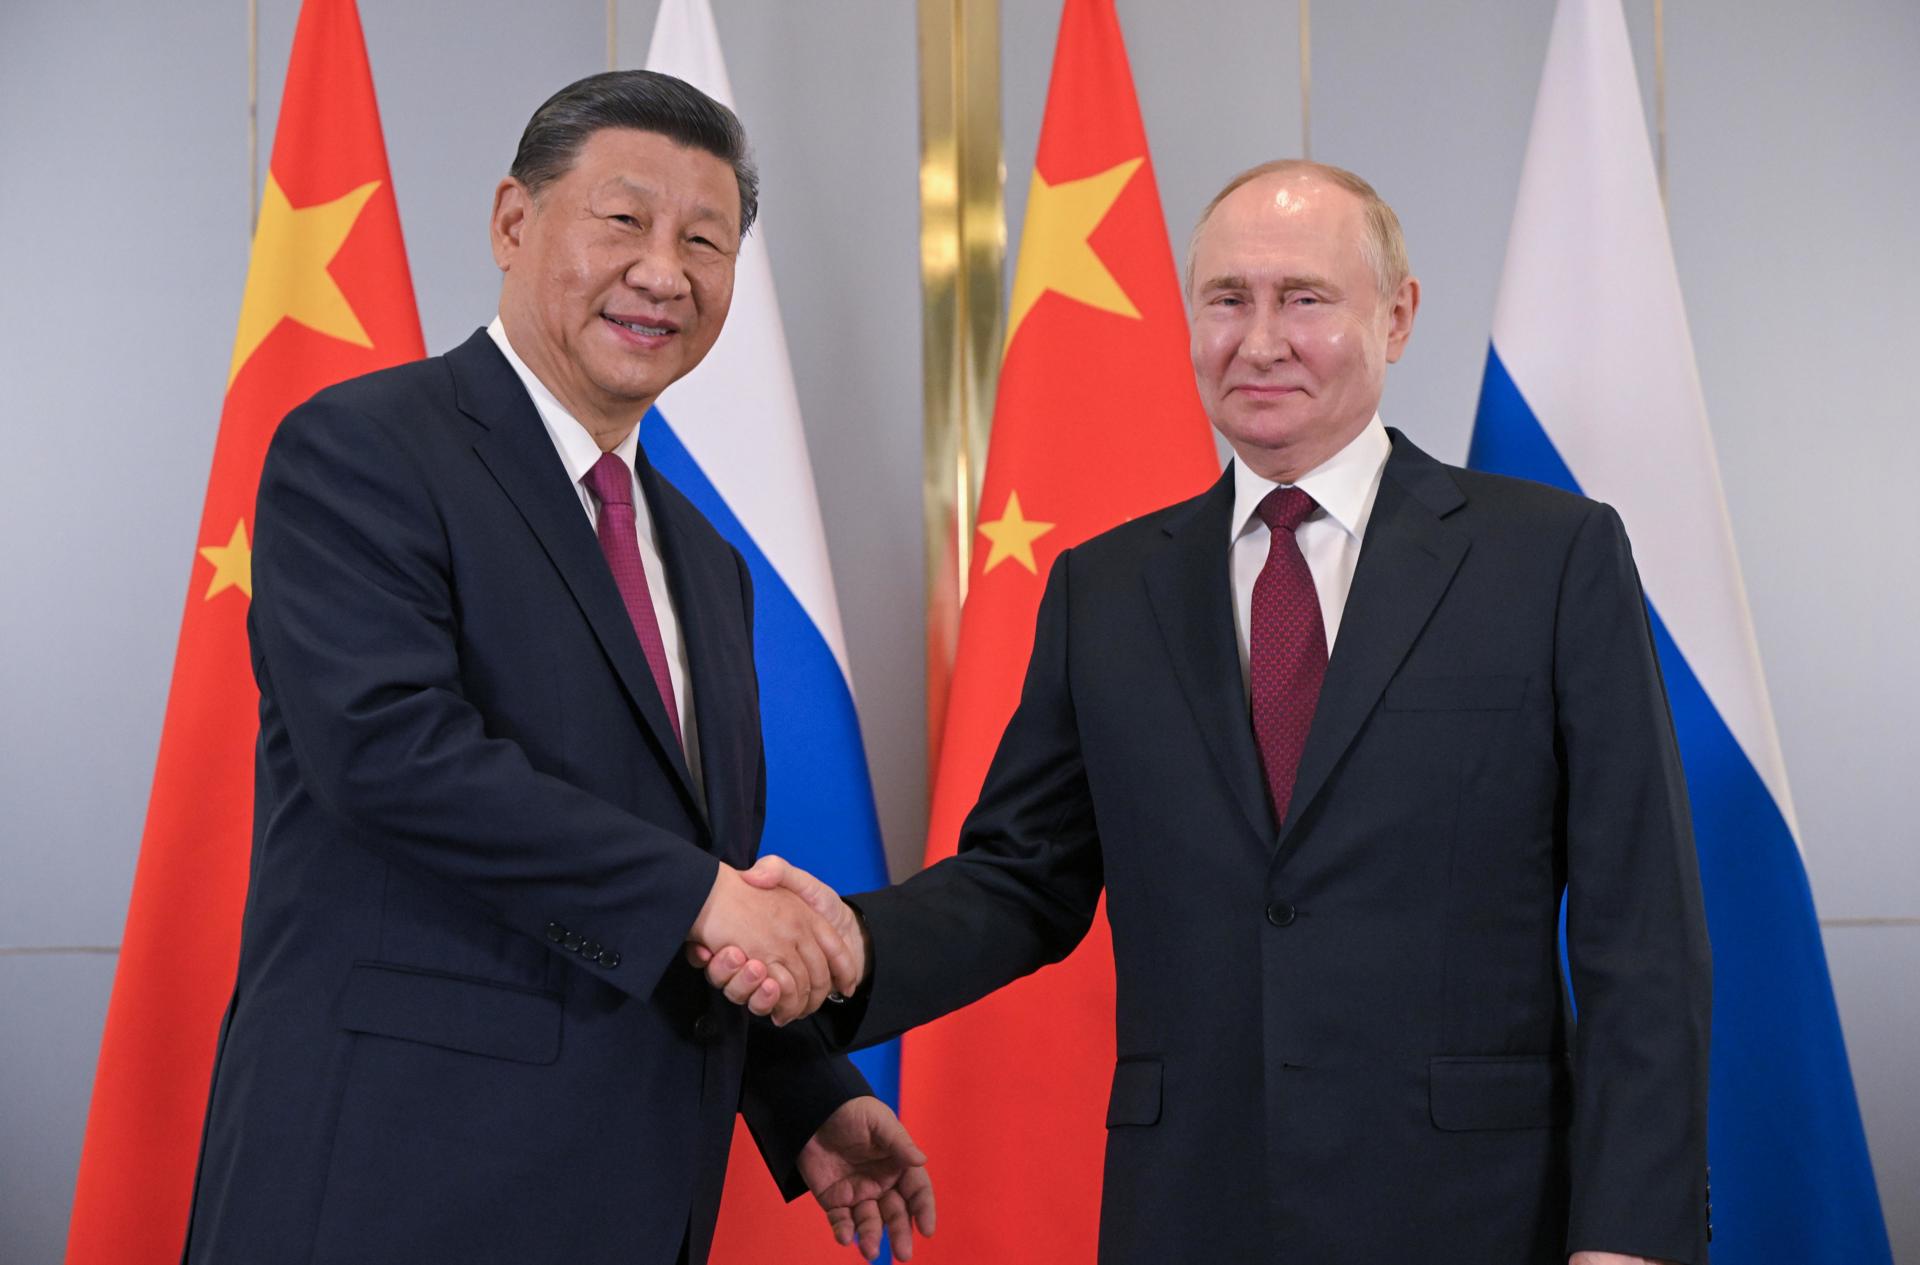 El presidente ruso, Vladimir Putin (D), y el presidente chino, Xi Jinping (I) en la cumbre de la Organización de Cooperación de Shanghai (OCS) en Astaná. EFE/EPA/SERGEY GUNEEV / SPUTNIK / KREMLIN POOL MANDATORY CREDIT
